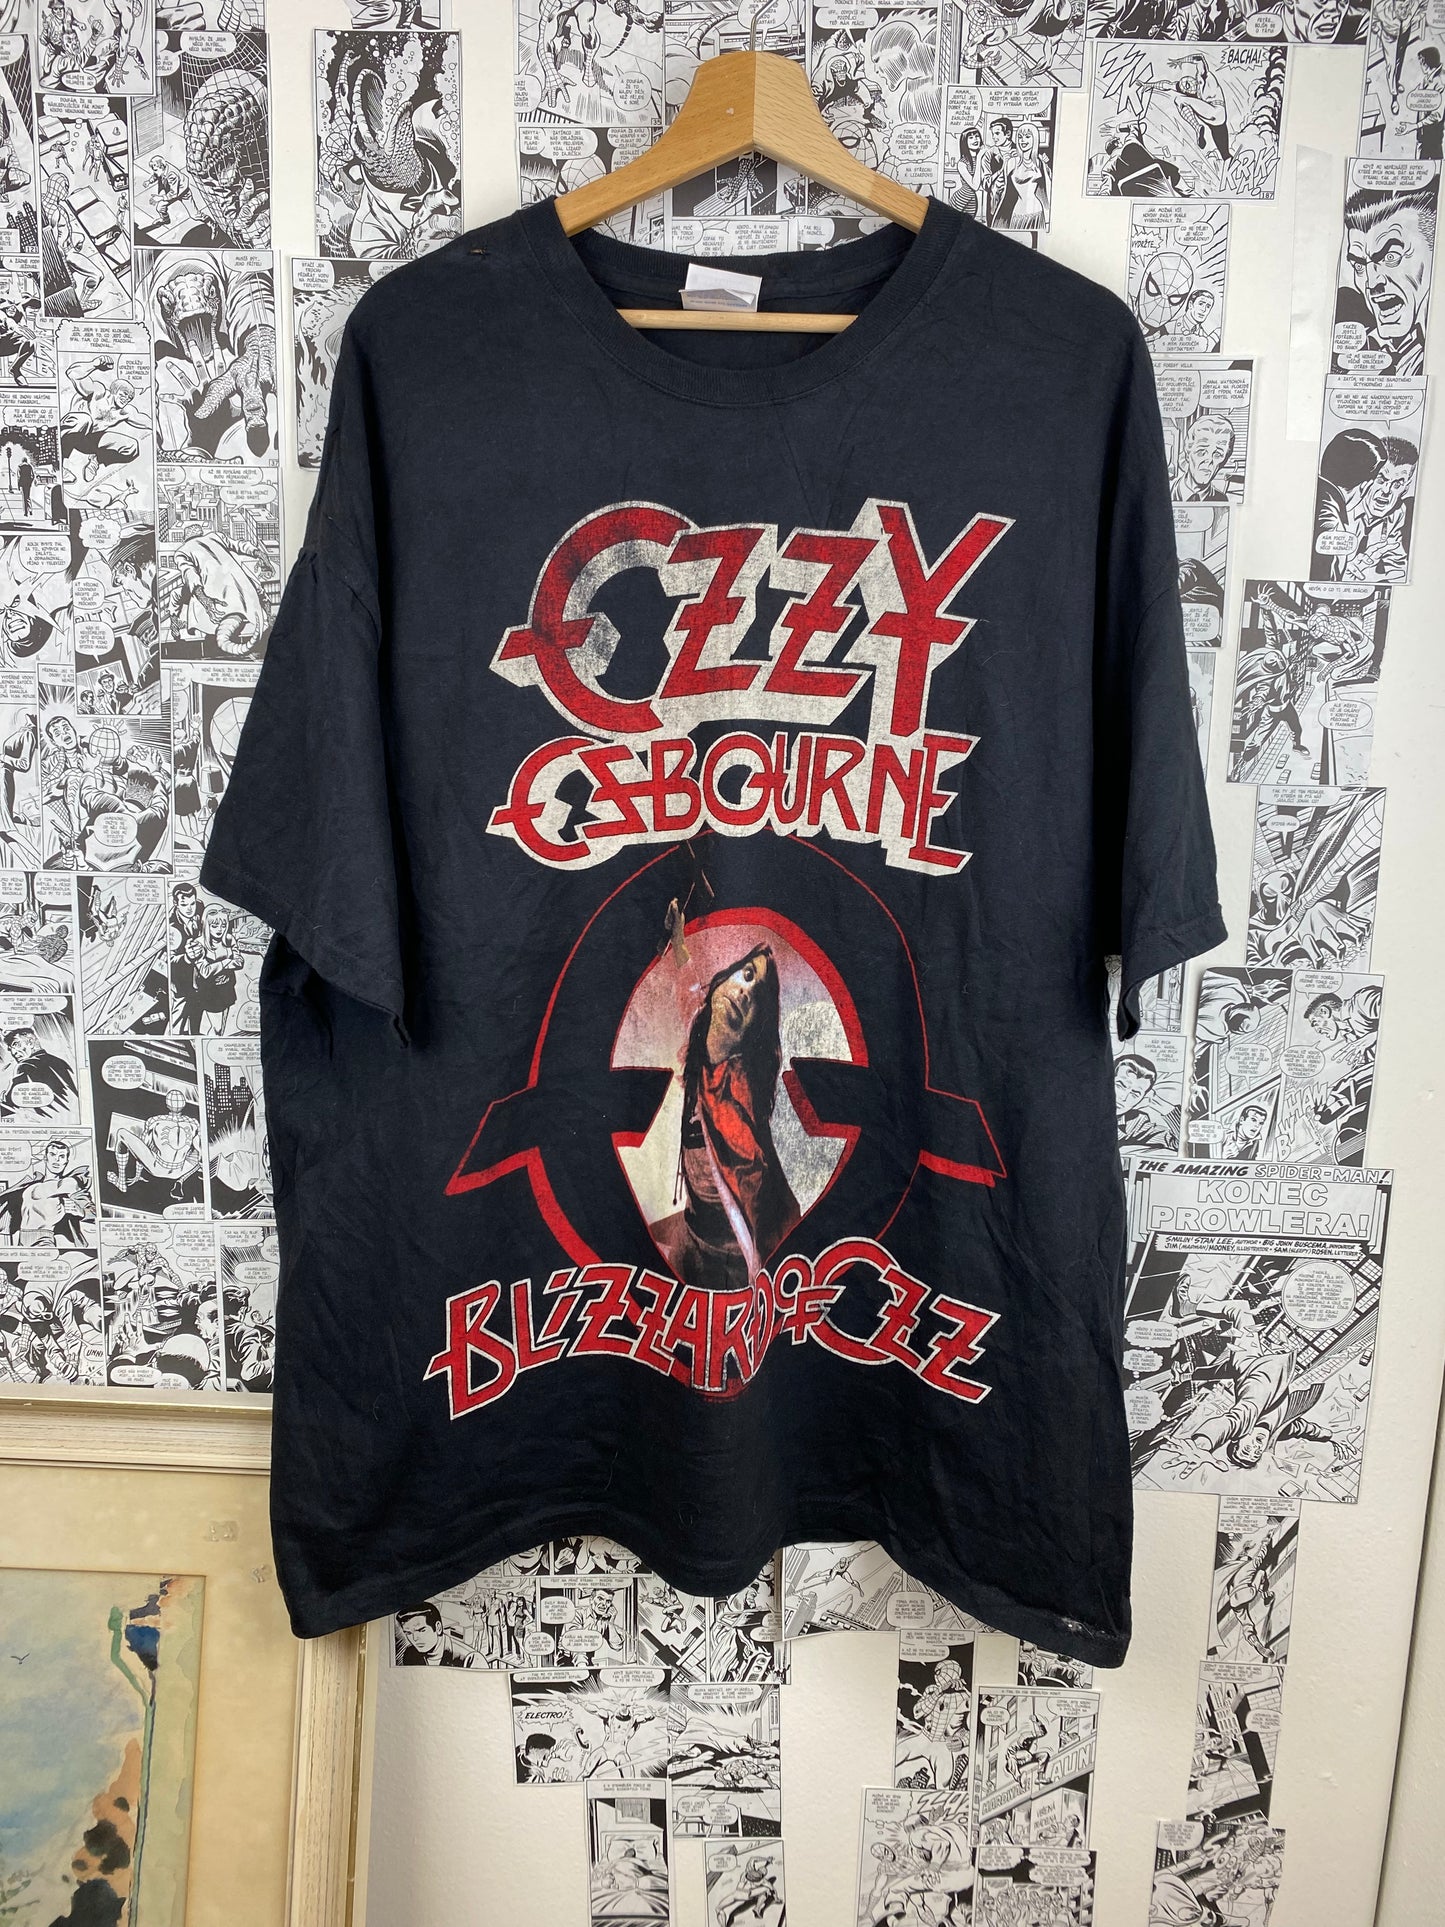 Vintage Ozzy Ozbourne “Blizzard of Ozz” t-shirt - size XXL